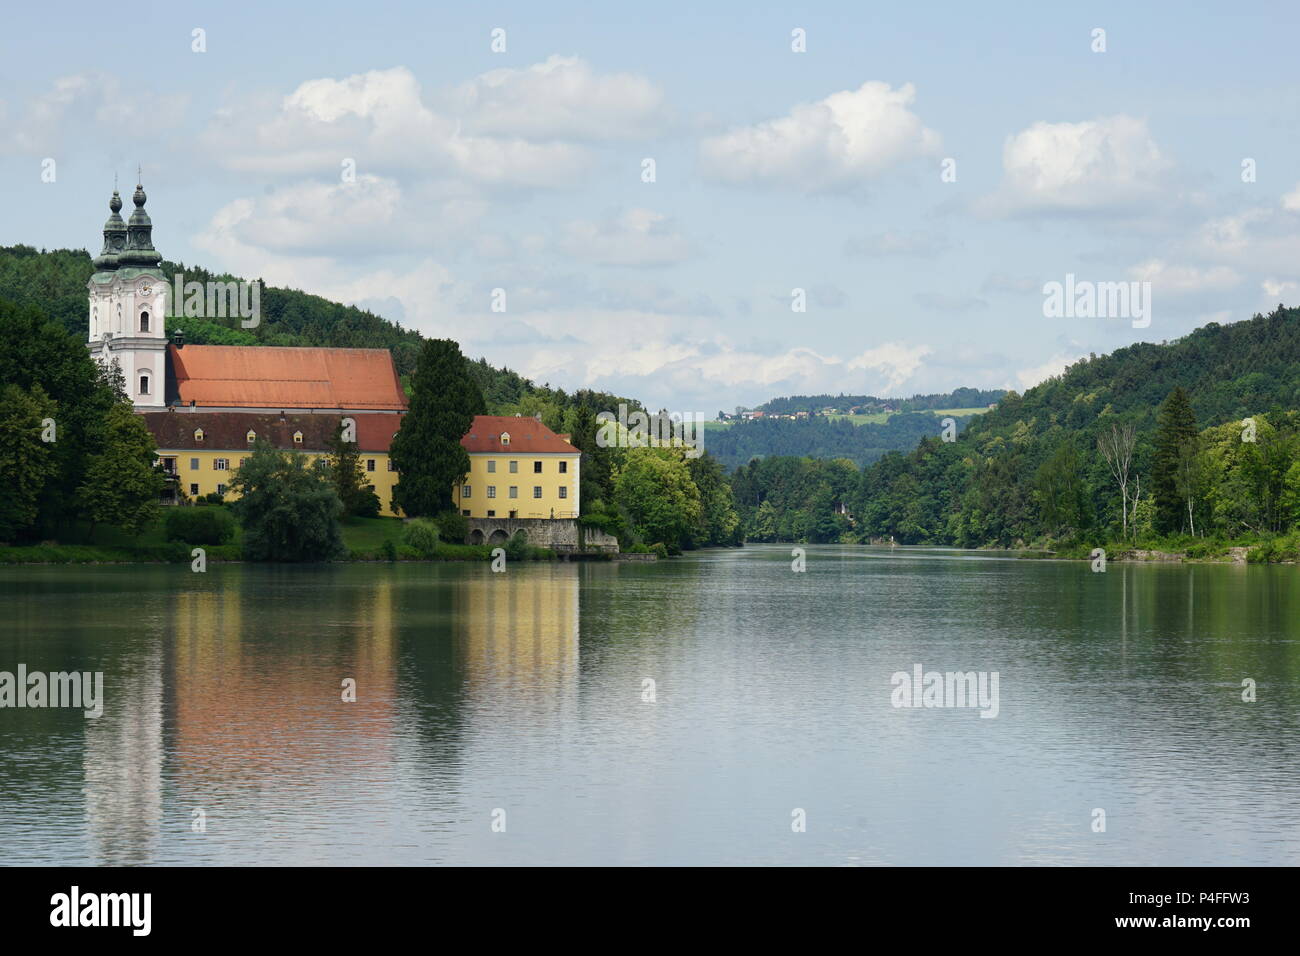 Einfahrt dans Vornbacher liens die enge, das Kloster Vornbach, Vornbach, excursion en bateau à partir de Paris à Passau sur la rivière Inn, l'Autriche et l'Allemagne Banque D'Images